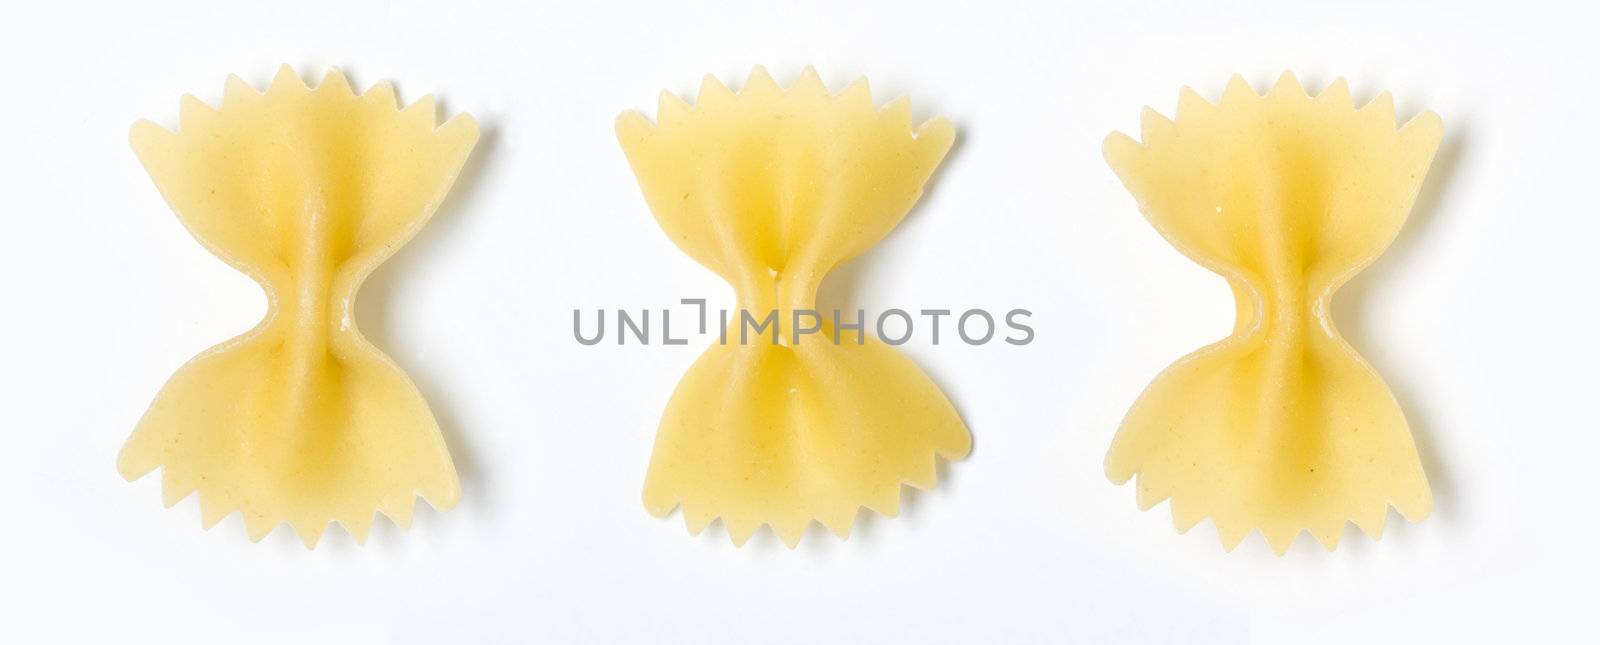 farfalle pasta isolated on white